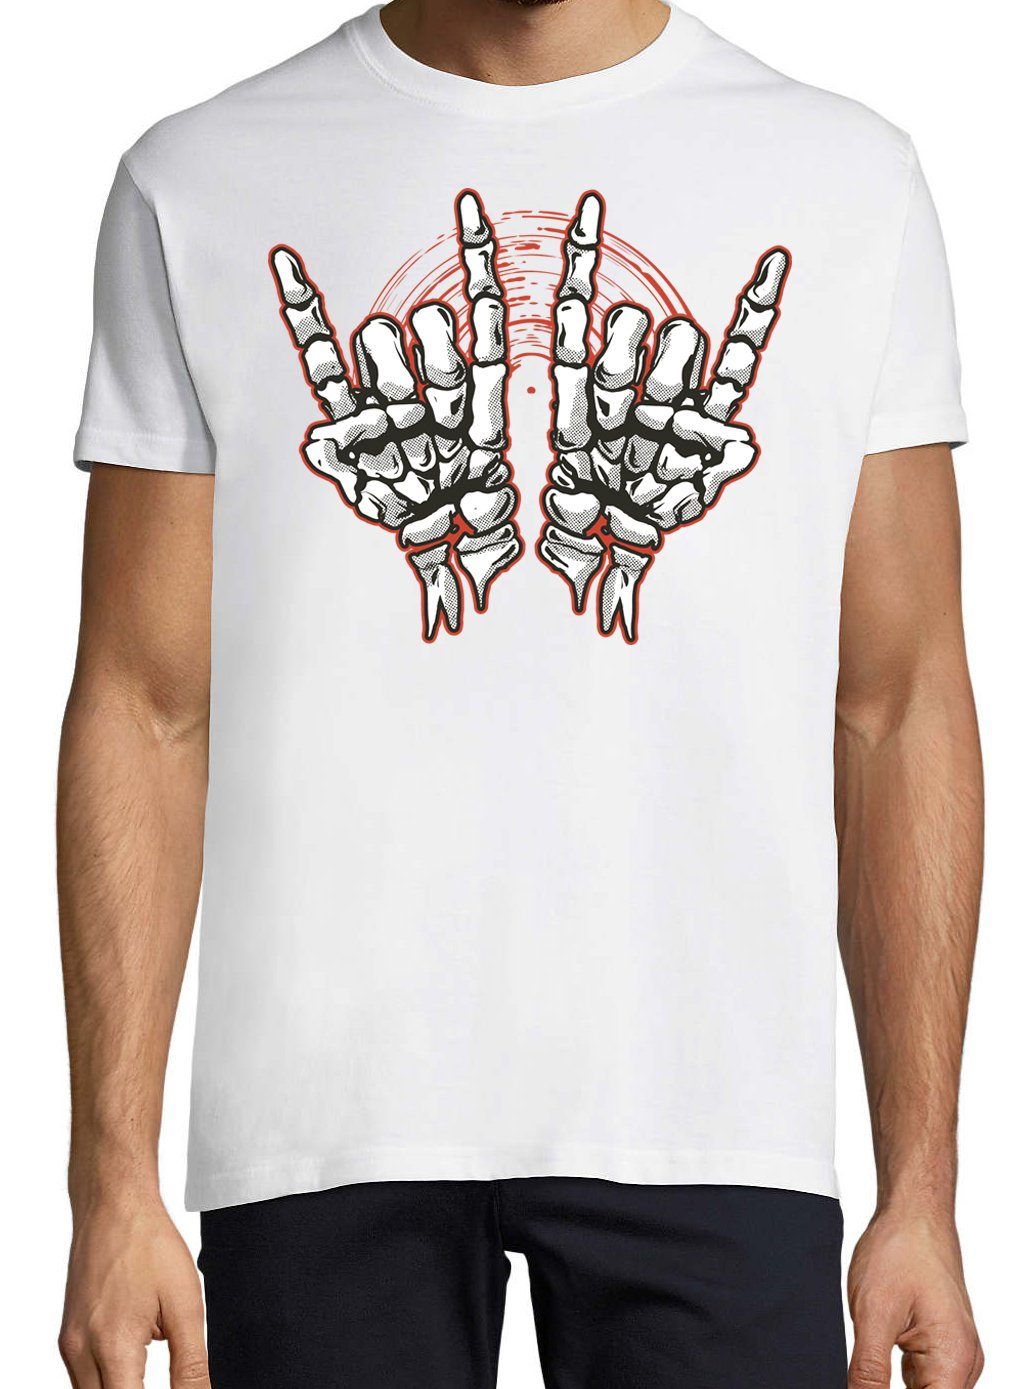 Weiss Youth Designz Rock'n'Roll Frontdruck Hand T-Shirt Fun-Look Horror Herren Skelett T-Shirt mit im Trendigem